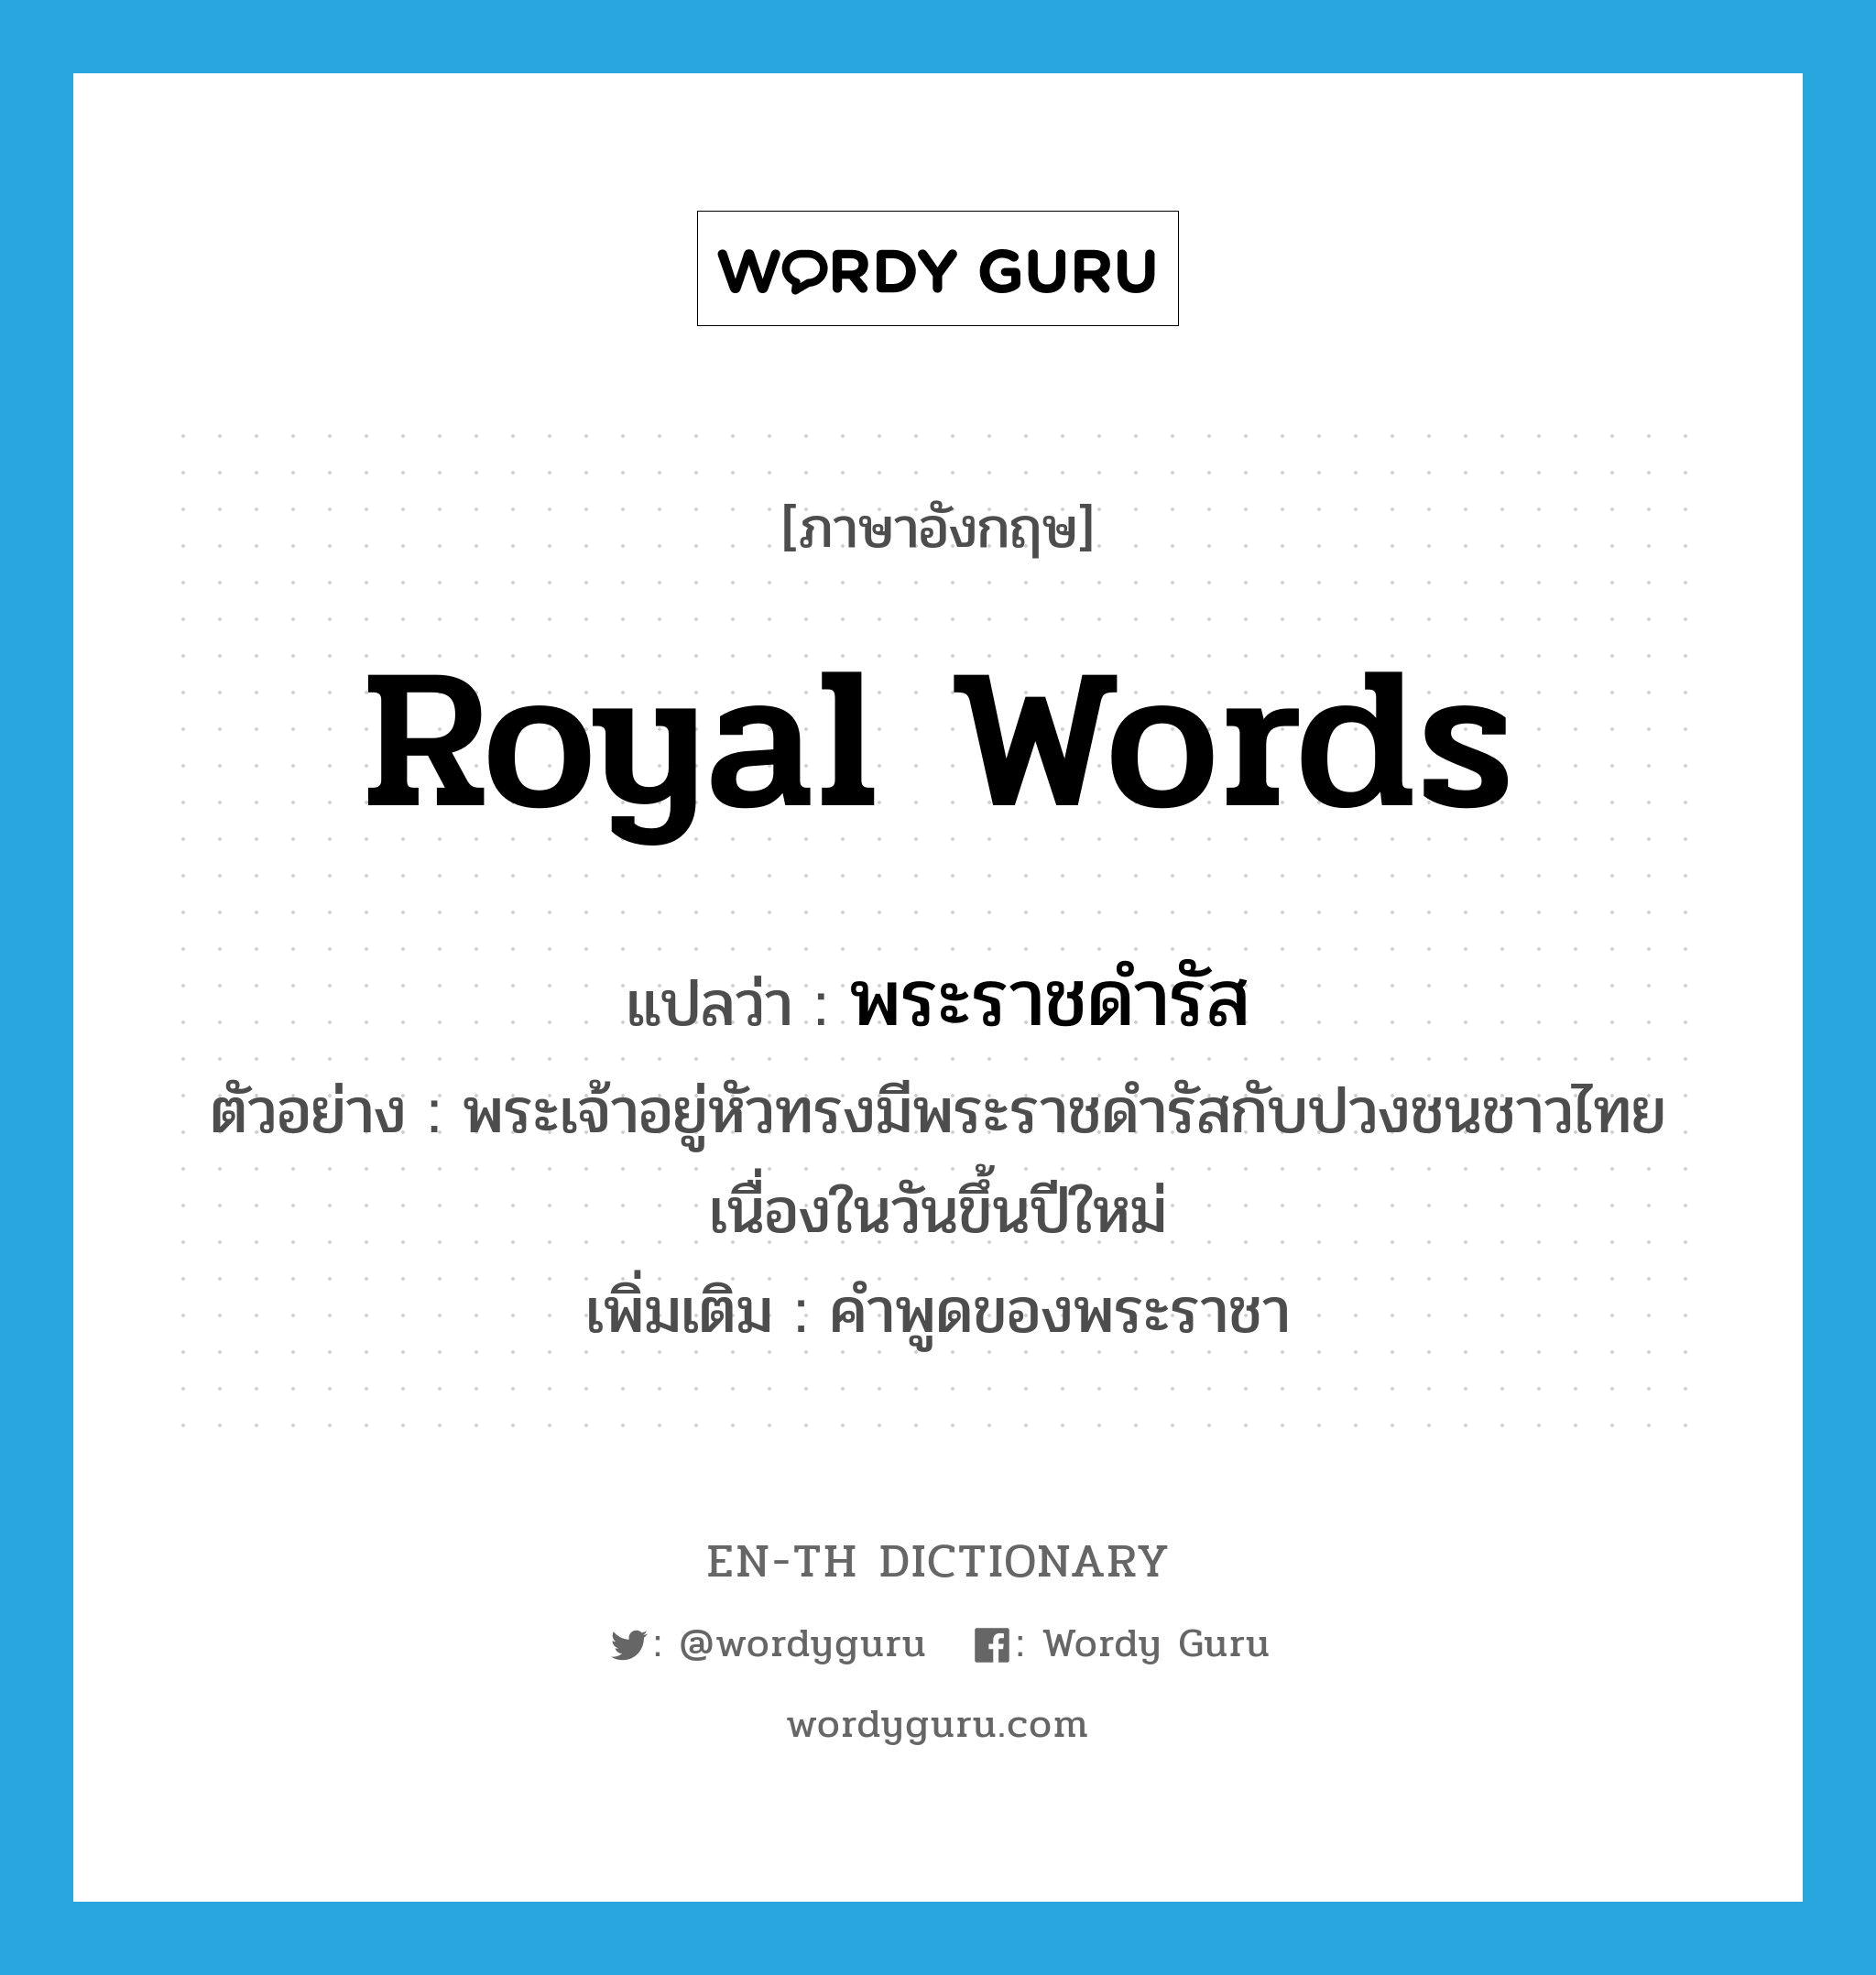 royal words แปลว่า?, คำศัพท์ภาษาอังกฤษ royal words แปลว่า พระราชดำรัส ประเภท N ตัวอย่าง พระเจ้าอยู่หัวทรงมีพระราชดำรัสกับปวงชนชาวไทยเนื่องในวันขึ้นปีใหม่ เพิ่มเติม คำพูดของพระราชา หมวด N